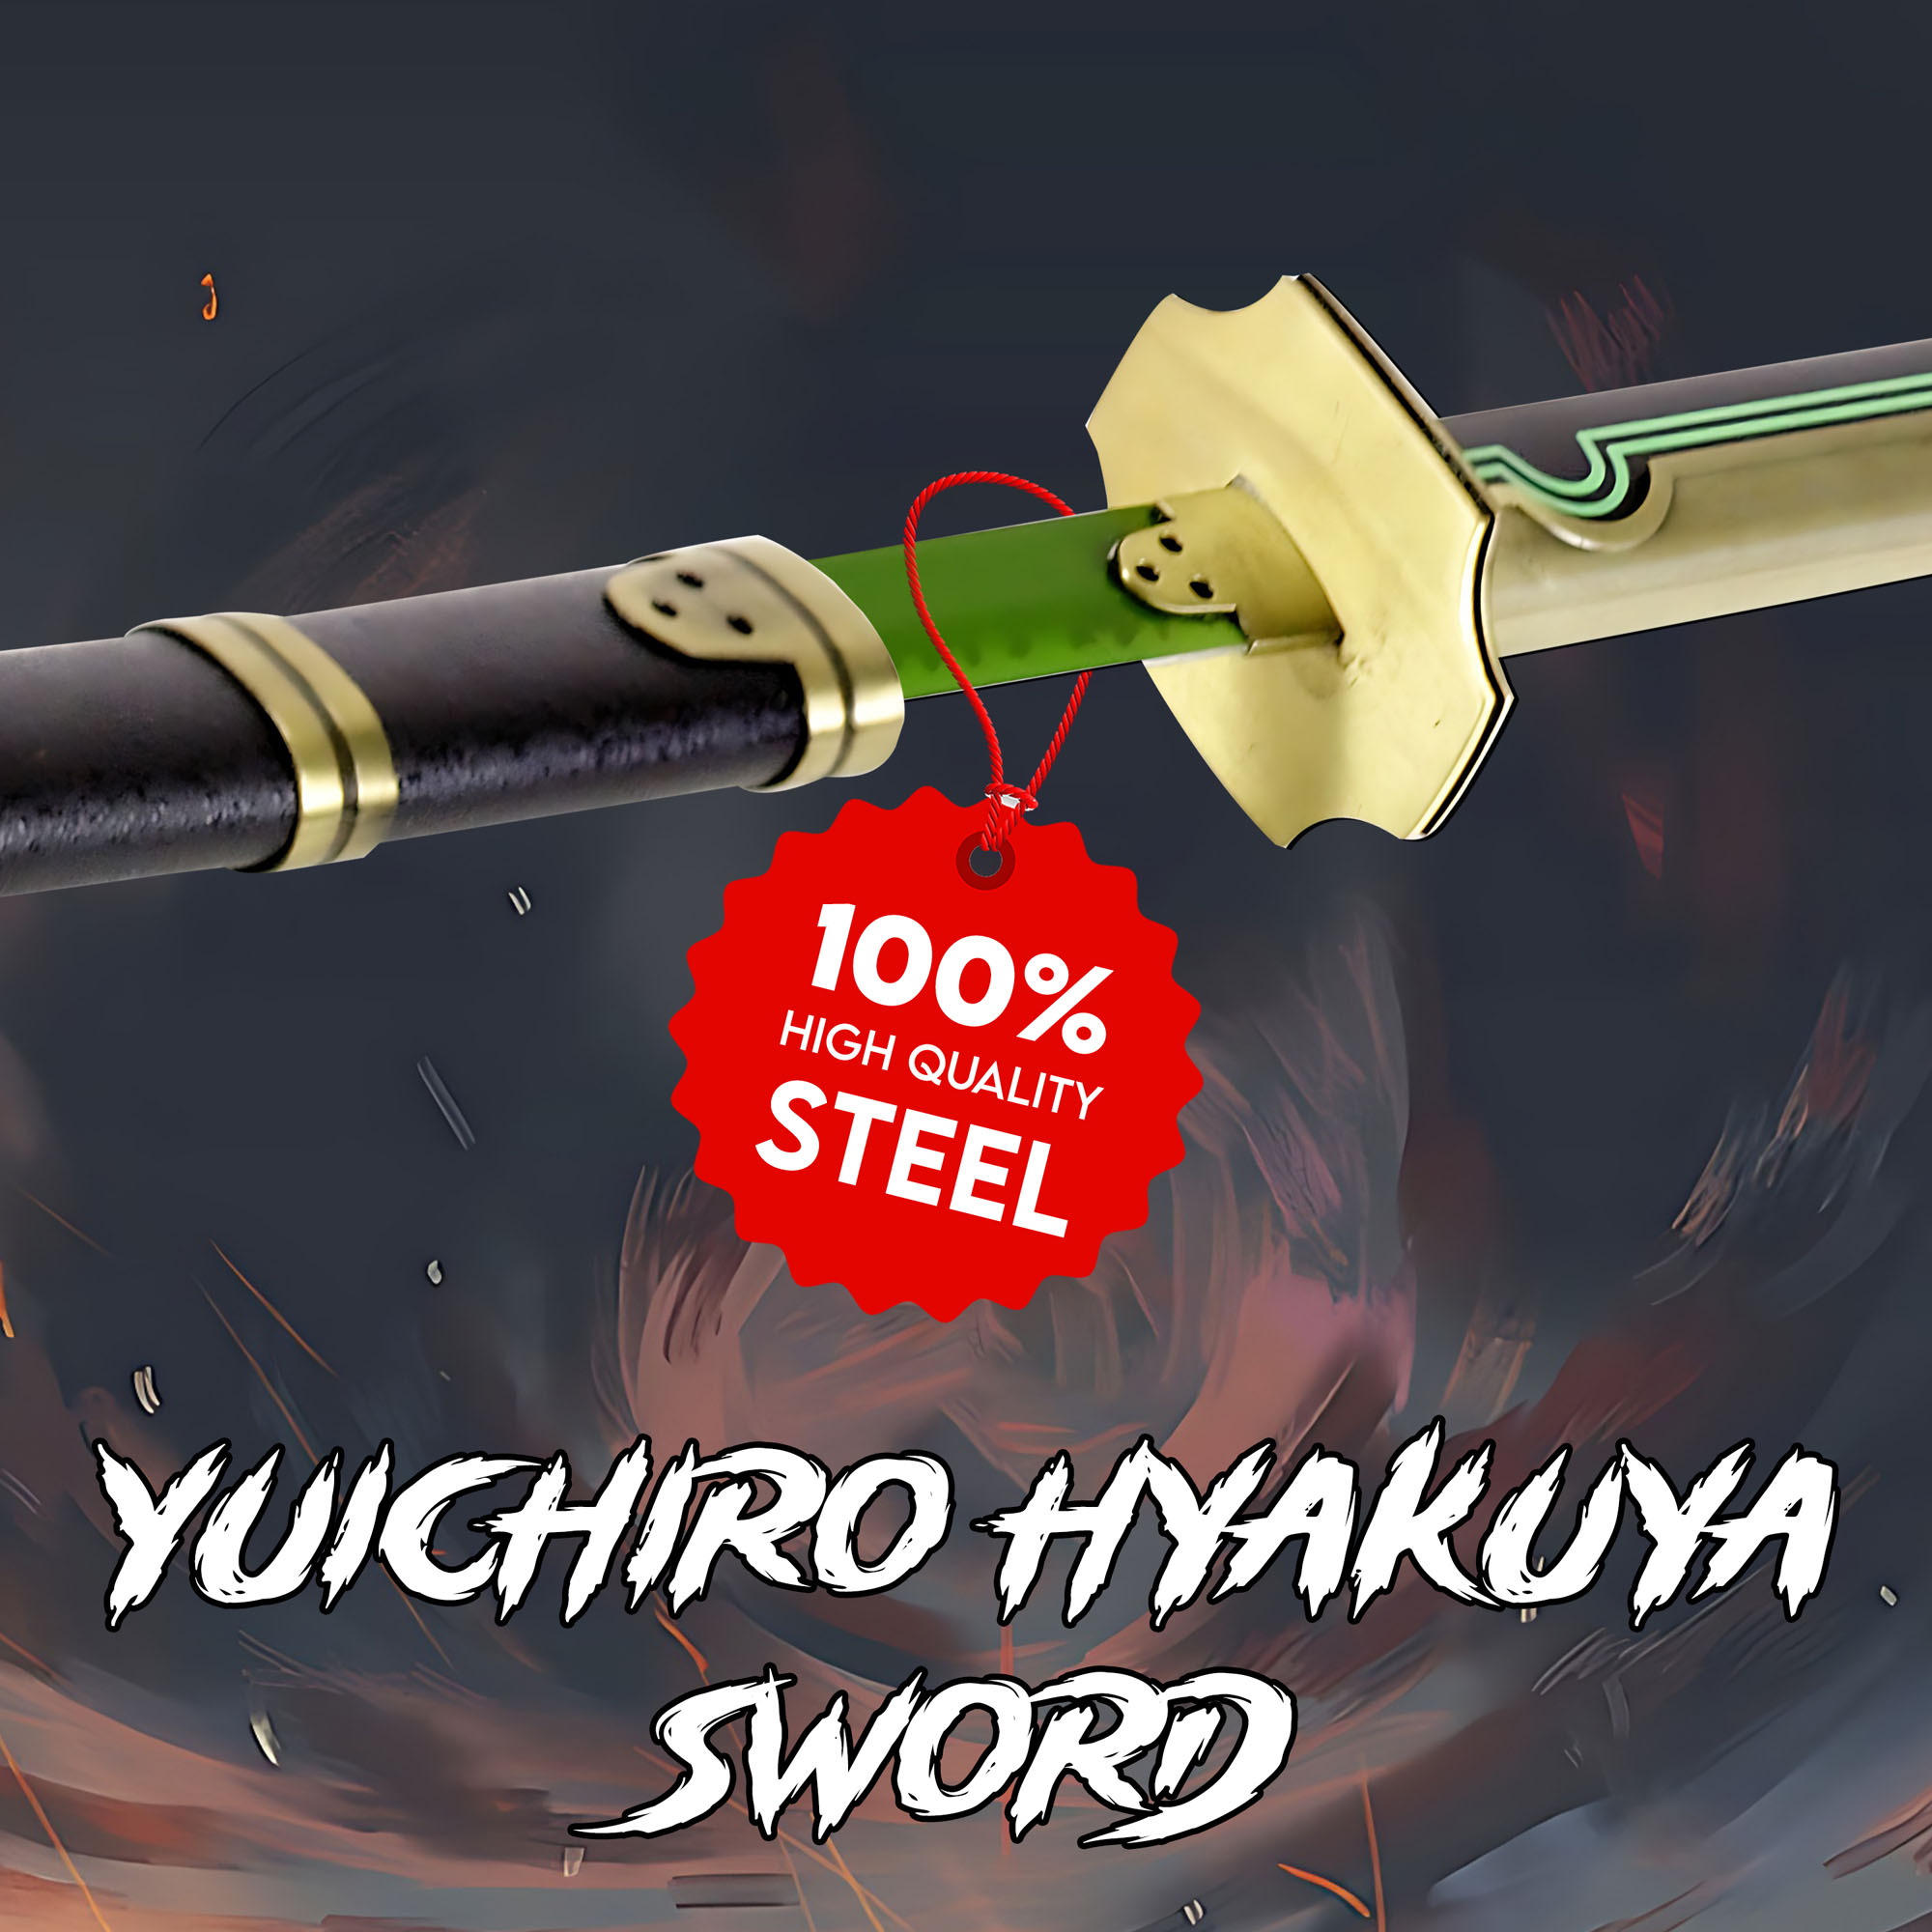 Seraph of the end - Yuichiro Hyakuya Sword